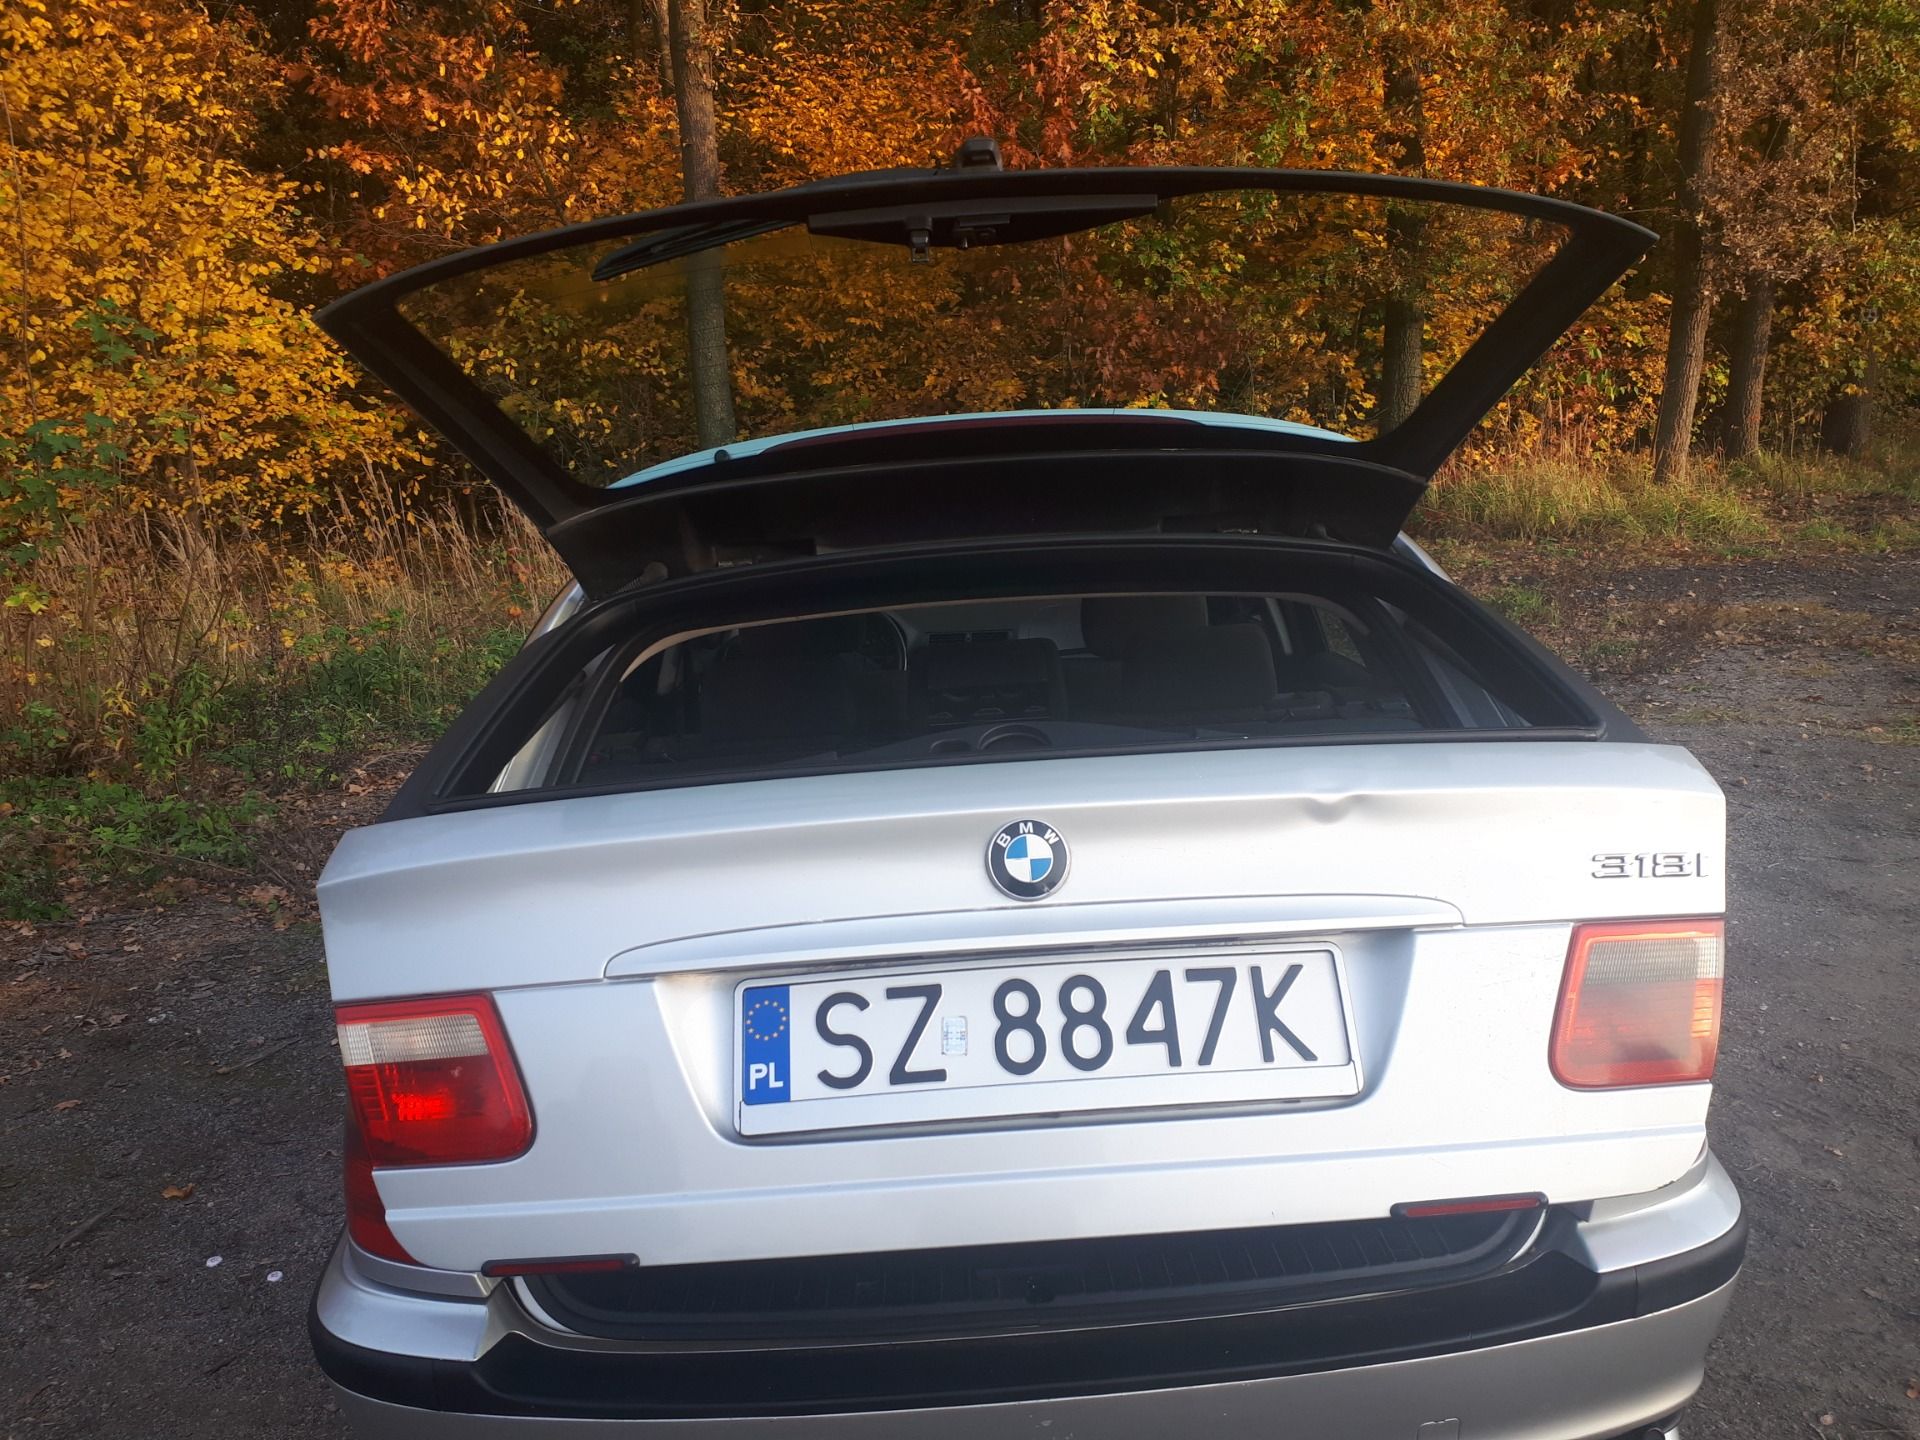 BMW E46 318i Touring 2000r. Zabrze, ogłoszenia